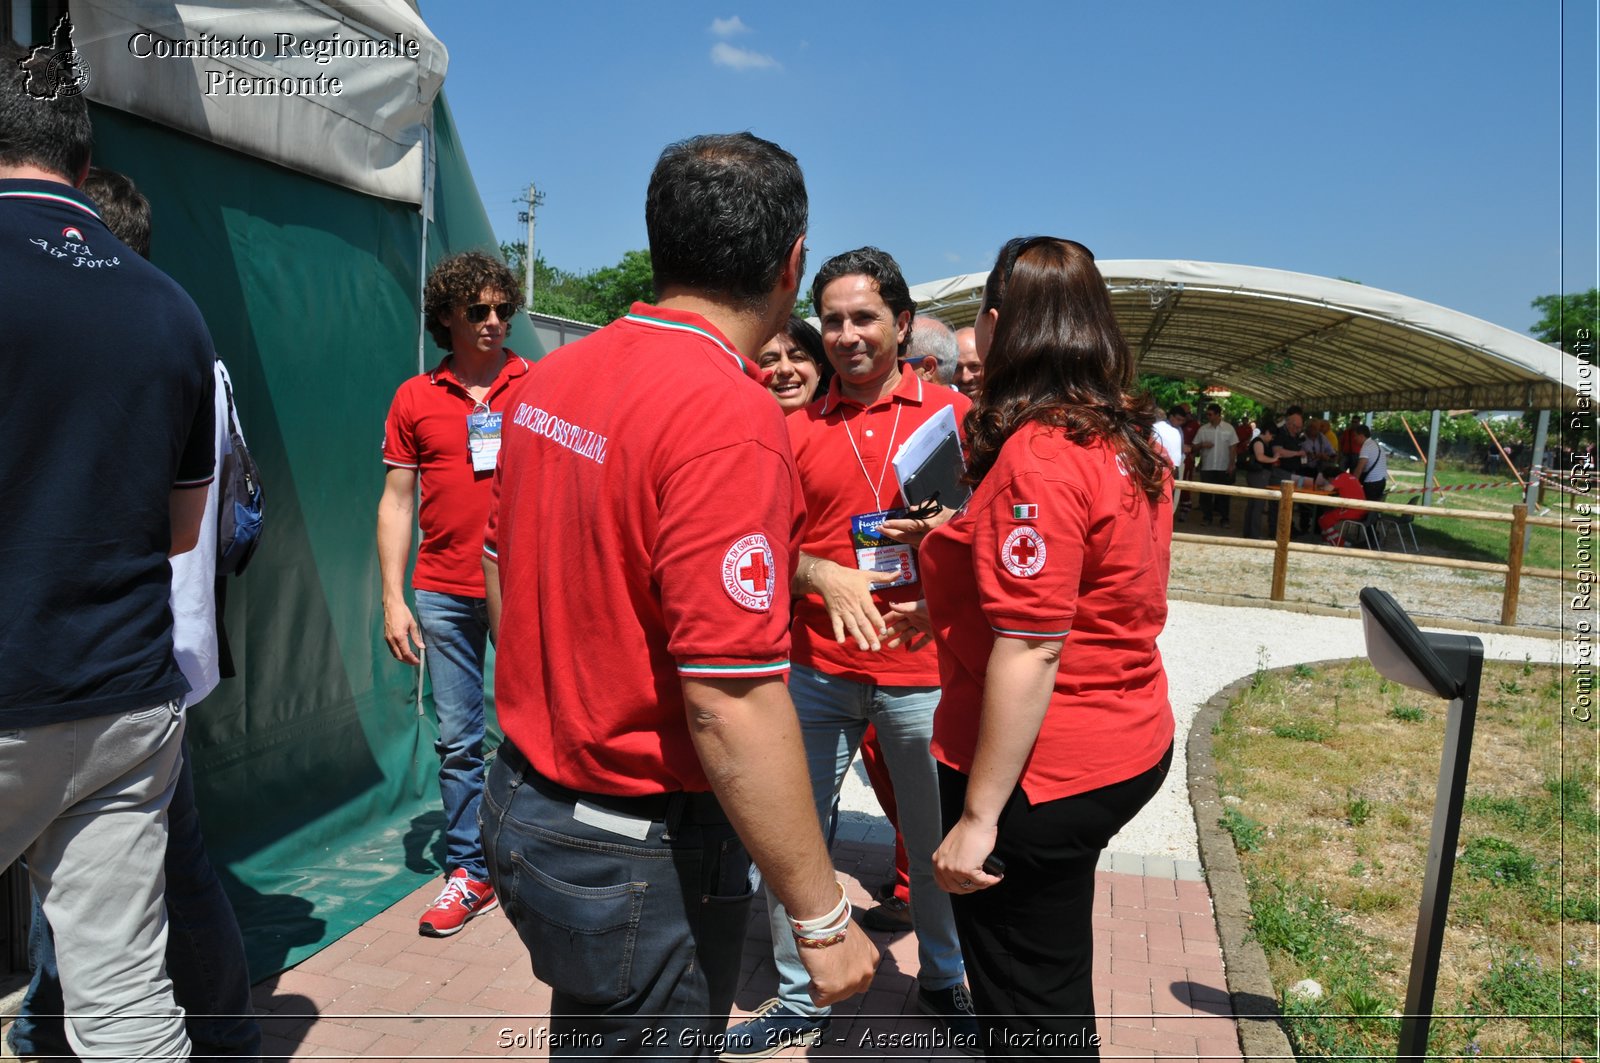 Solferino - 22 Giugno 2013 - Assemblea Nazionale - Croce Rossa Italiana - Comitato Regionale del Piemonte